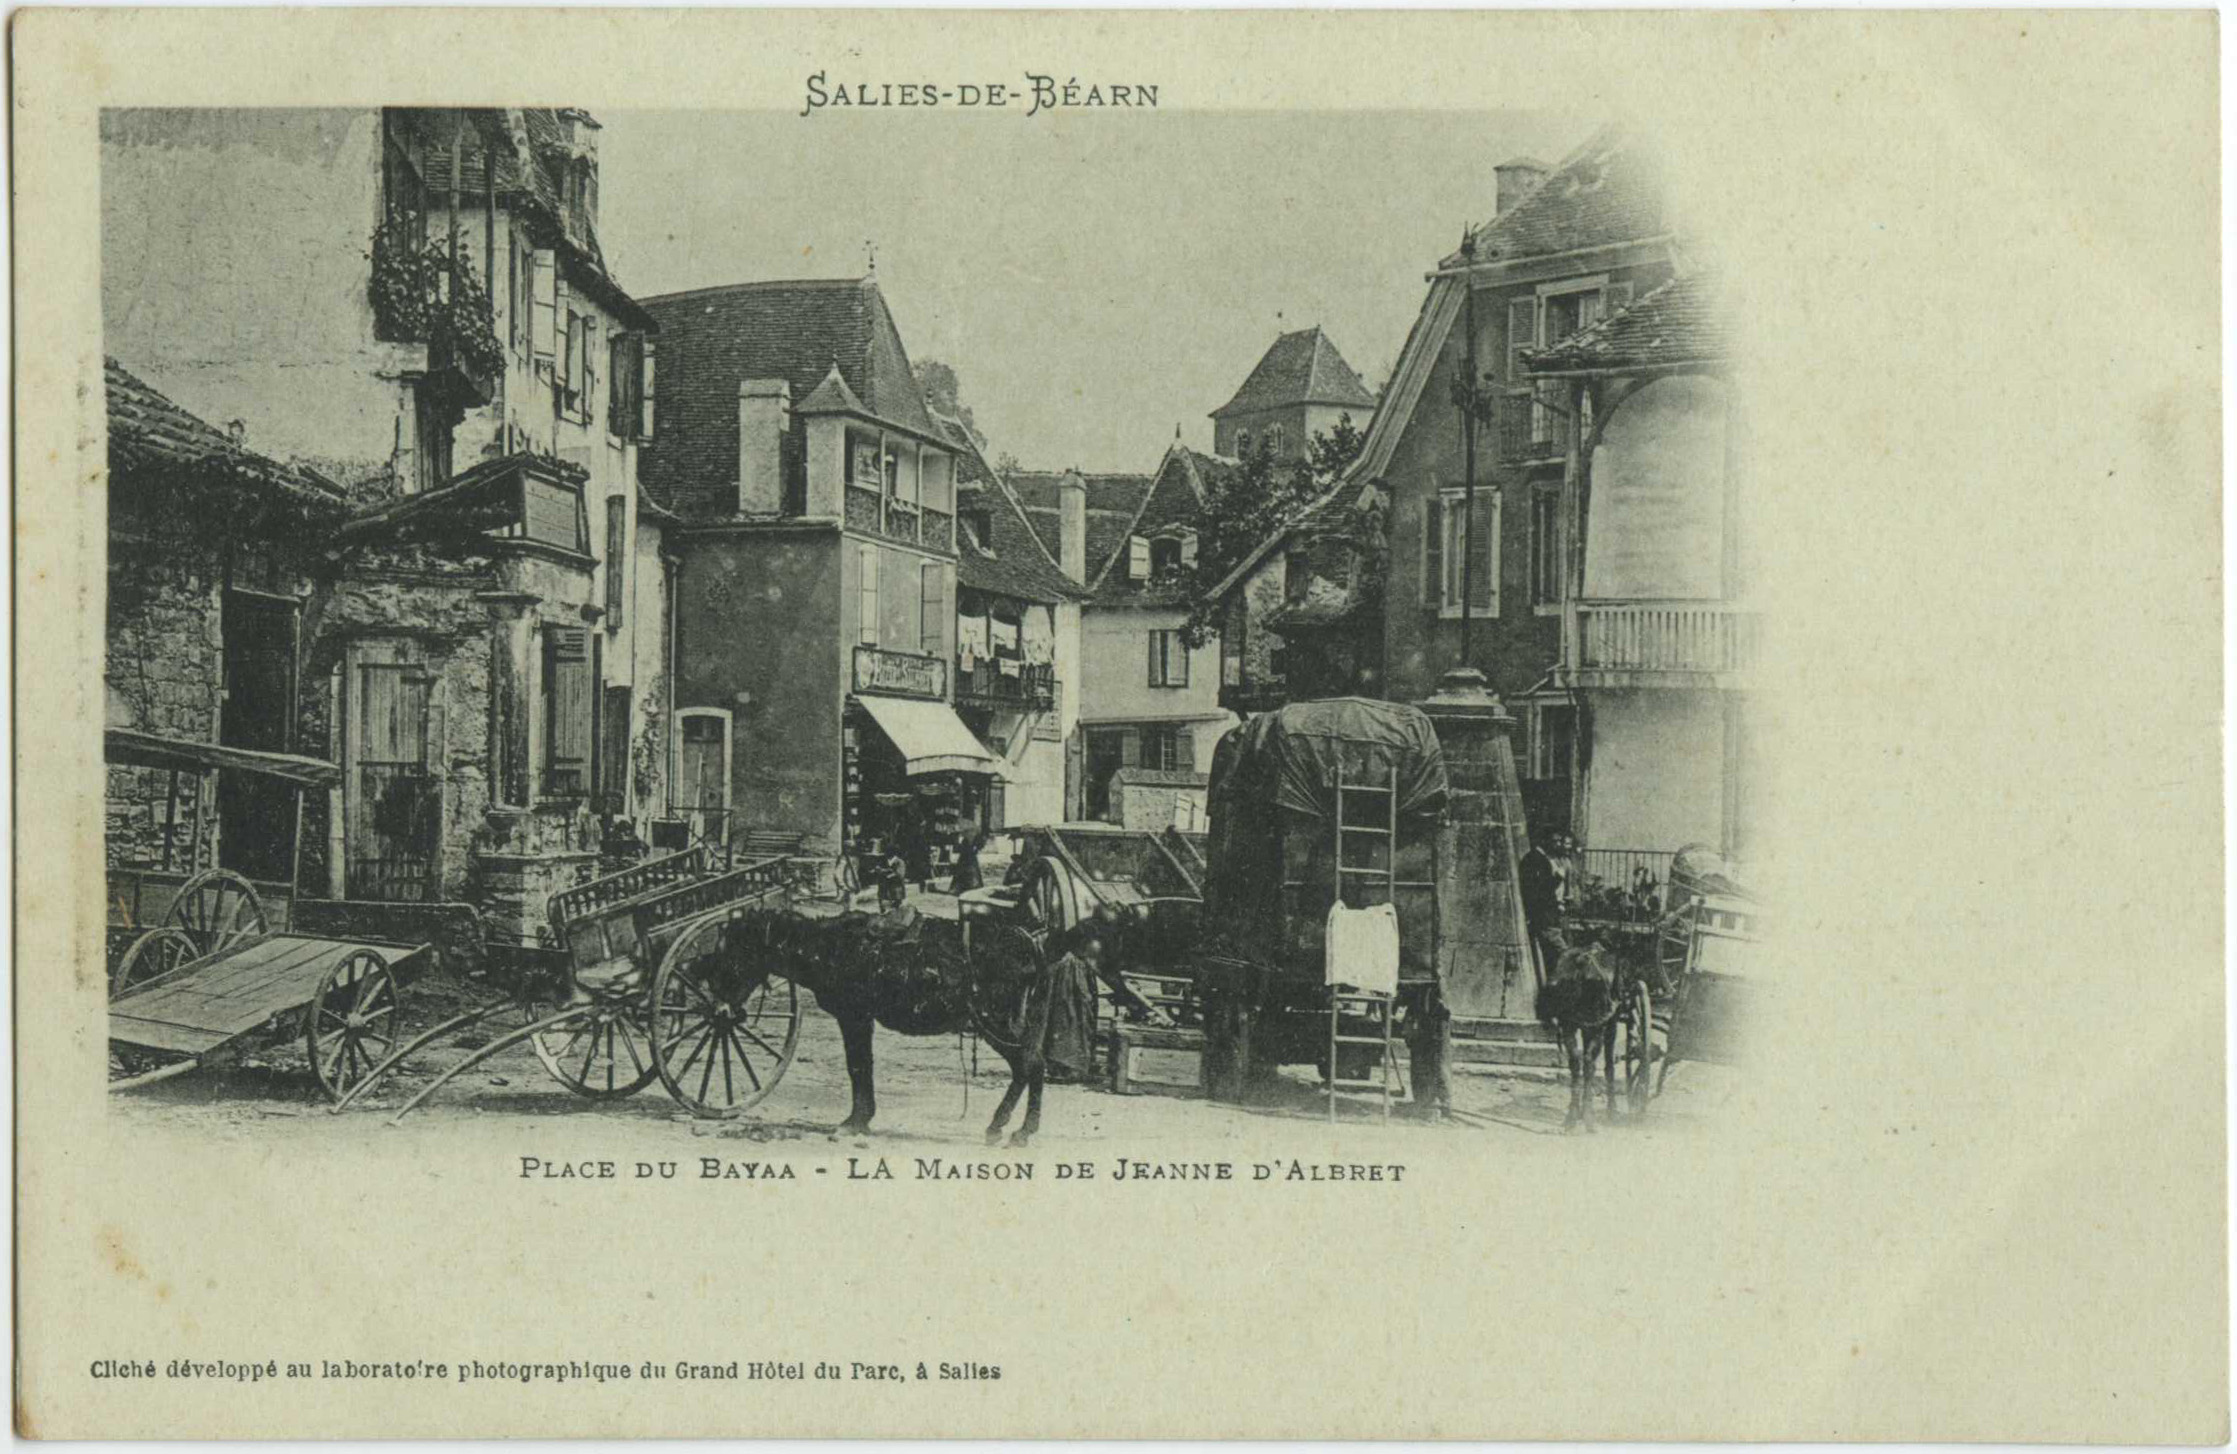 Salies-de-Béarn - Place du Bayaa - La Maison de Jeanne d'Albret